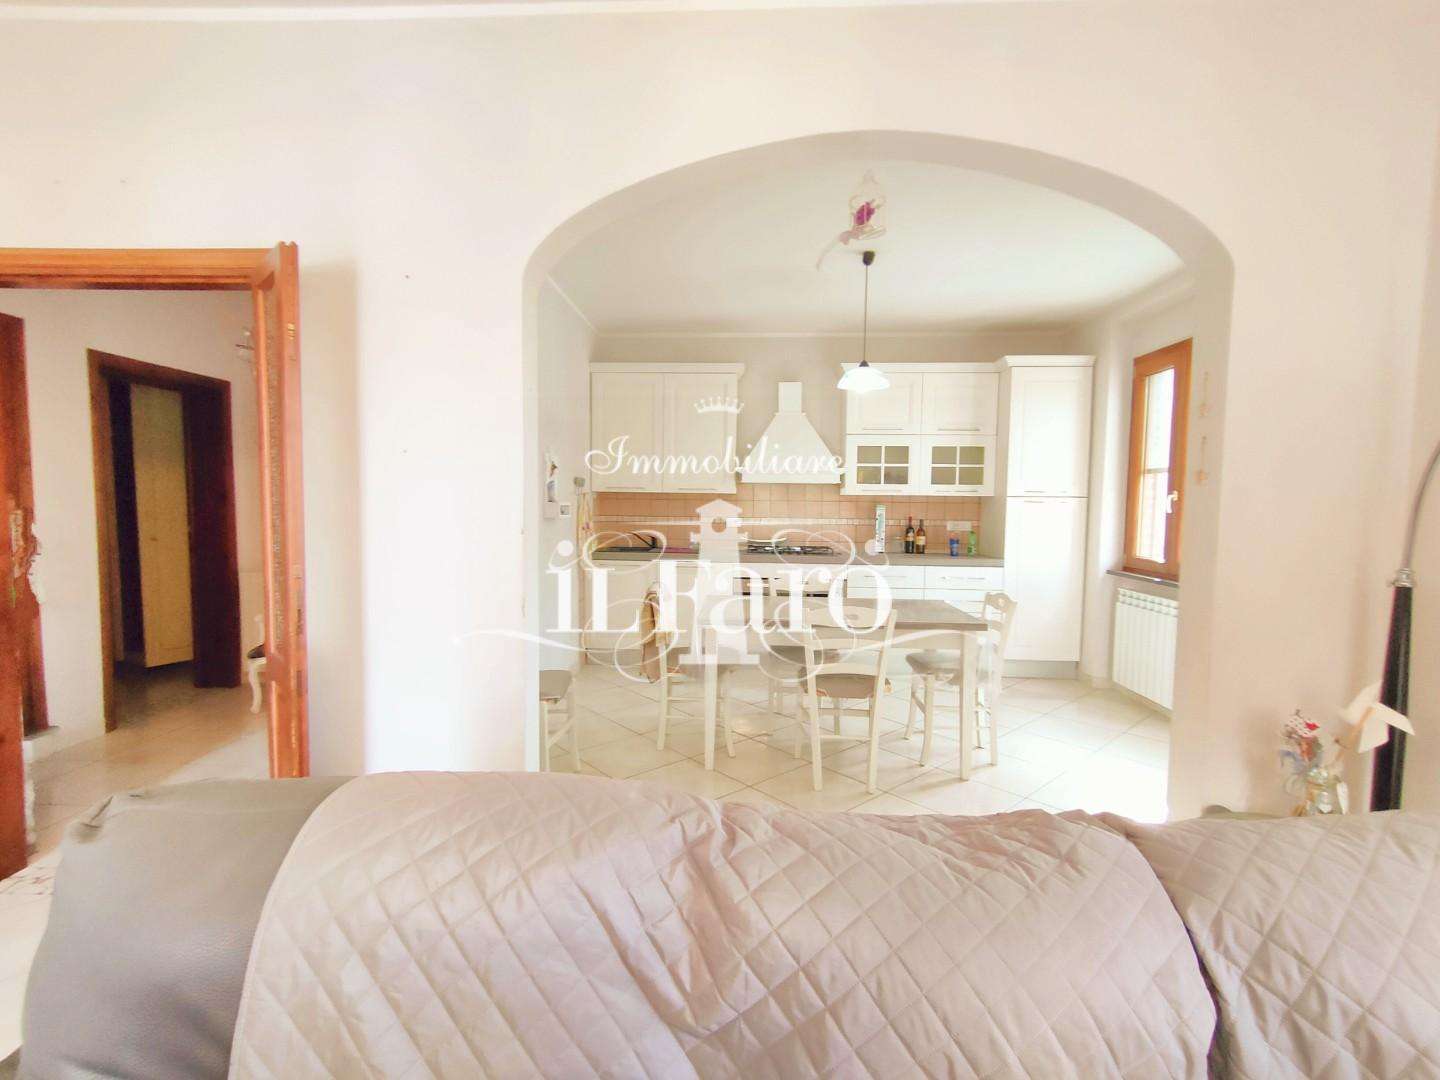 Casa Bi - Trifamiliare in Vendita a San Giuliano Terme Via Bettinelli, 20